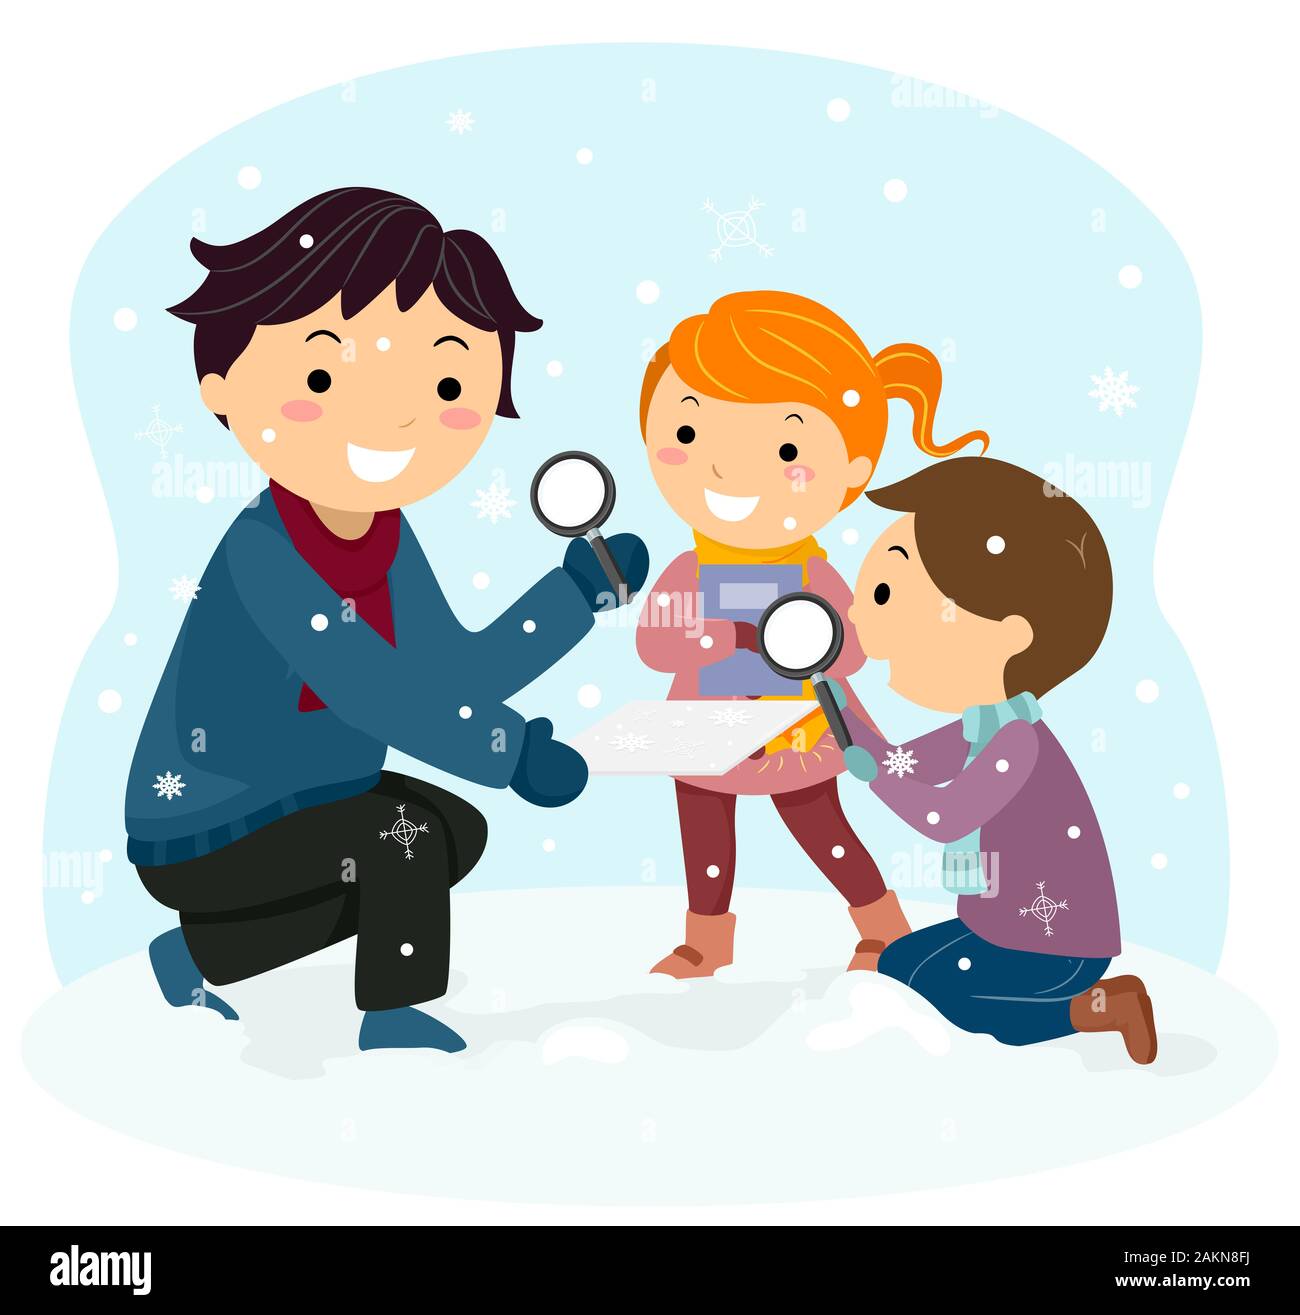 Illustrazione di Stickman Kids osservando i fiocchi di neve utilizzando una lente di ingrandimento con il loro insegnamento all'aperto Foto Stock